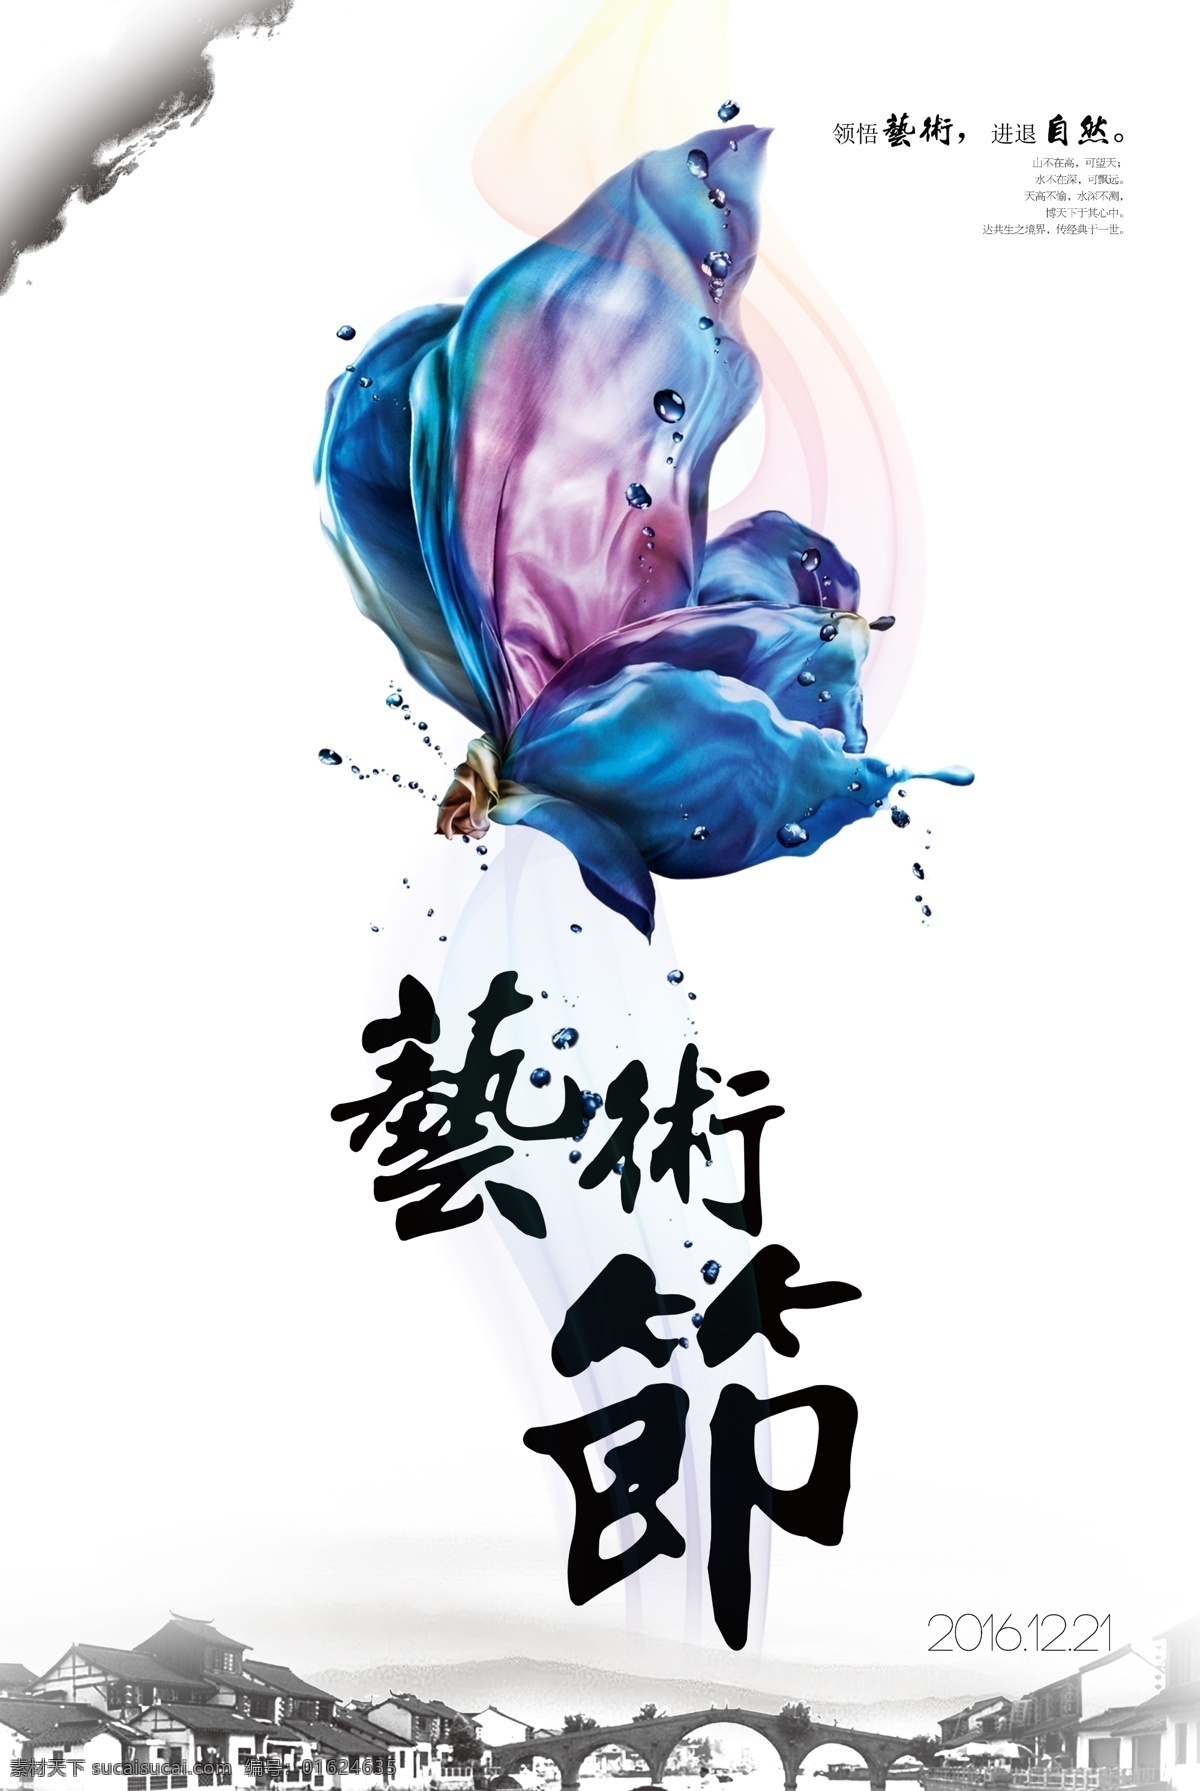 日 系 文艺 品牌 促销 海报 花卉 花卉海报 极简风 简约海报 日系海报 手绘海报 手绘花卉 小清新海报